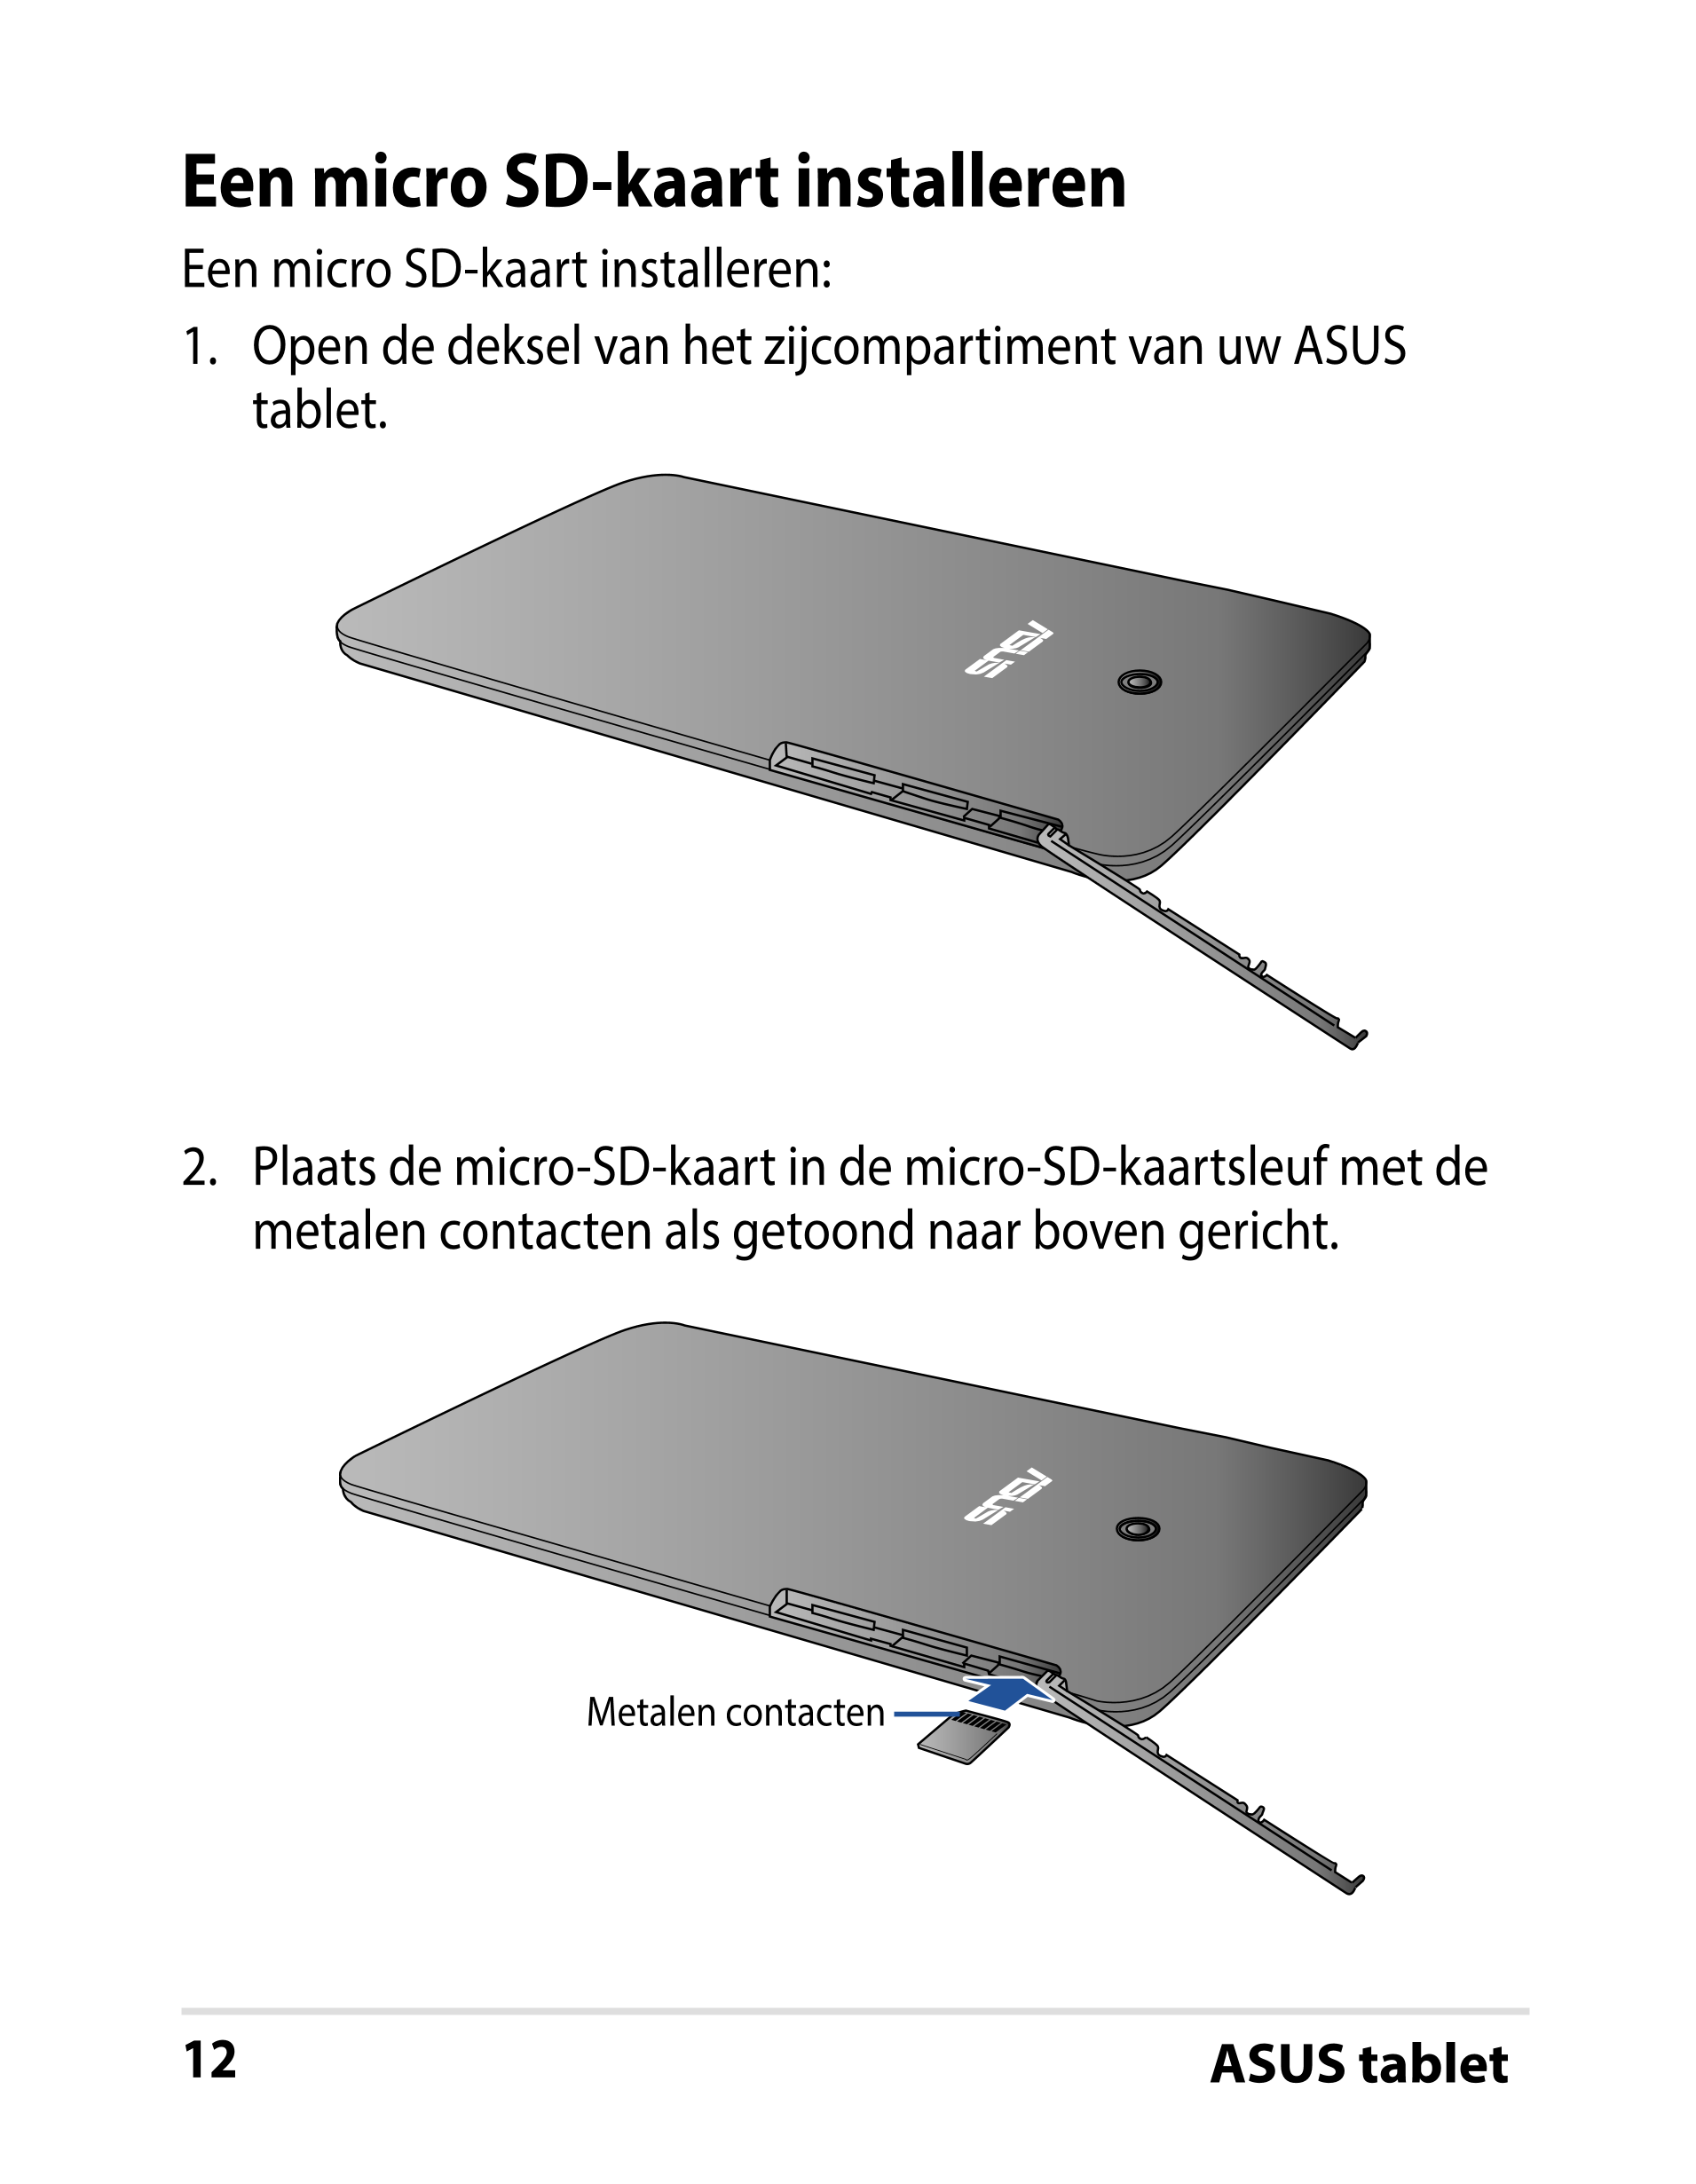 Een micro SD-kaart installeren
Een micro SD-kaart installeren:
1.  Open de deksel van het zijcompartiment van uw ASUS 
tablet.
2